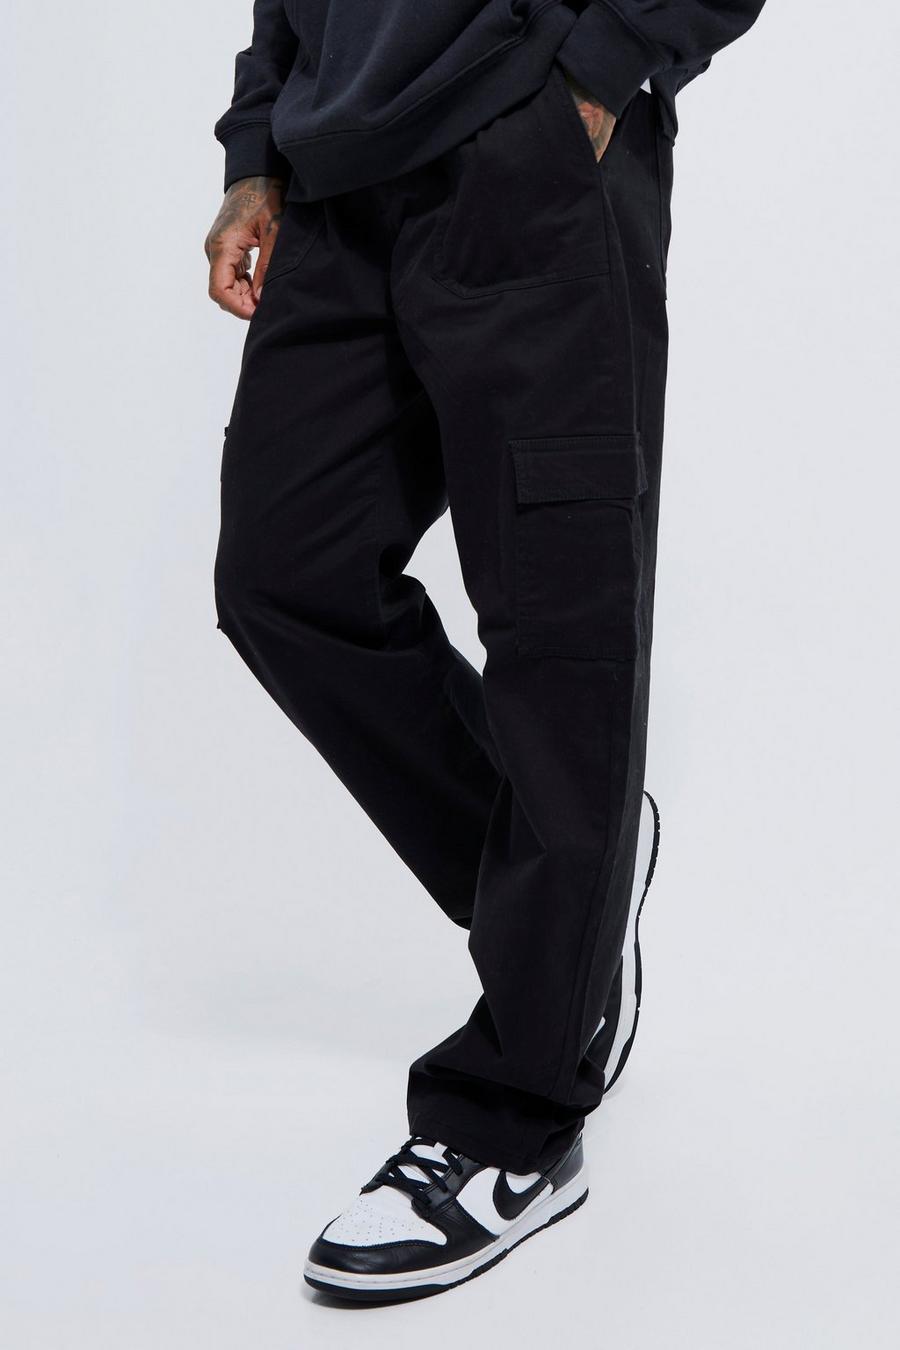 MEC, Pants & Jumpsuits, Mec Black Capri Track Pants Pockets Elastic Waist  Euc